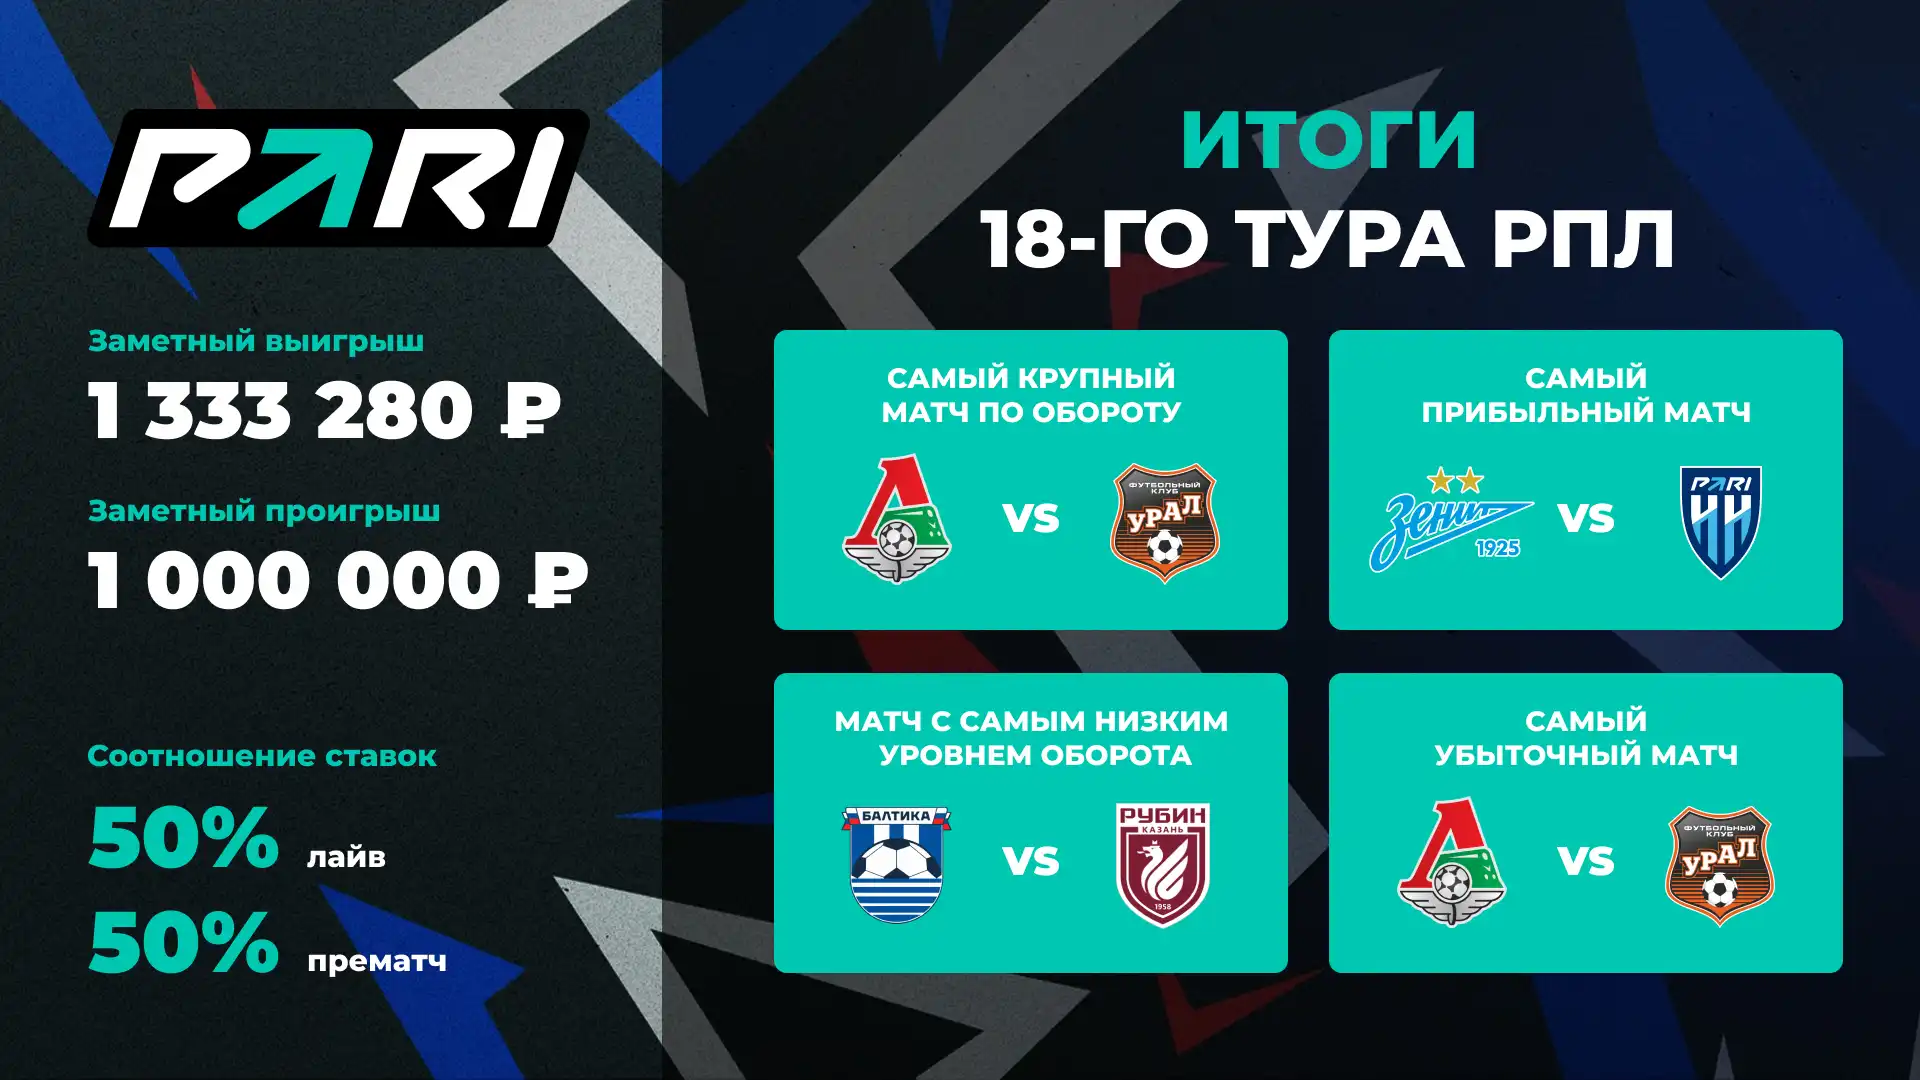 Итоги 18-го тура РПЛ. Клиенты PARI больше всего ставили на матч Локомотив — Урал